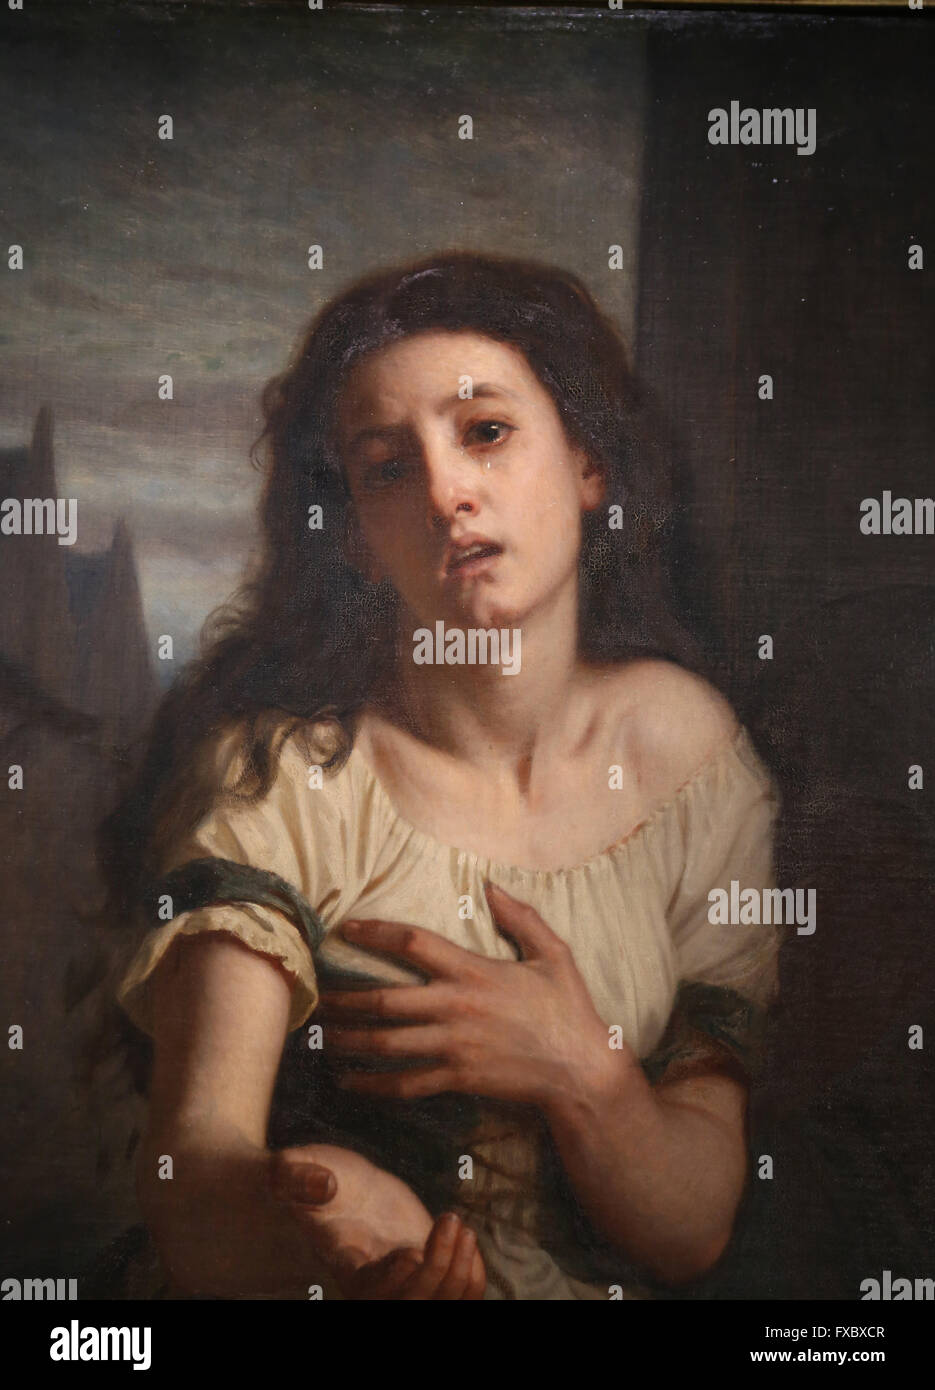 Une femme mendiant, 1861. Par le peintre français Hugues Merle (1823-1881). Musée d'Orsay. Paris. La France. Banque D'Images